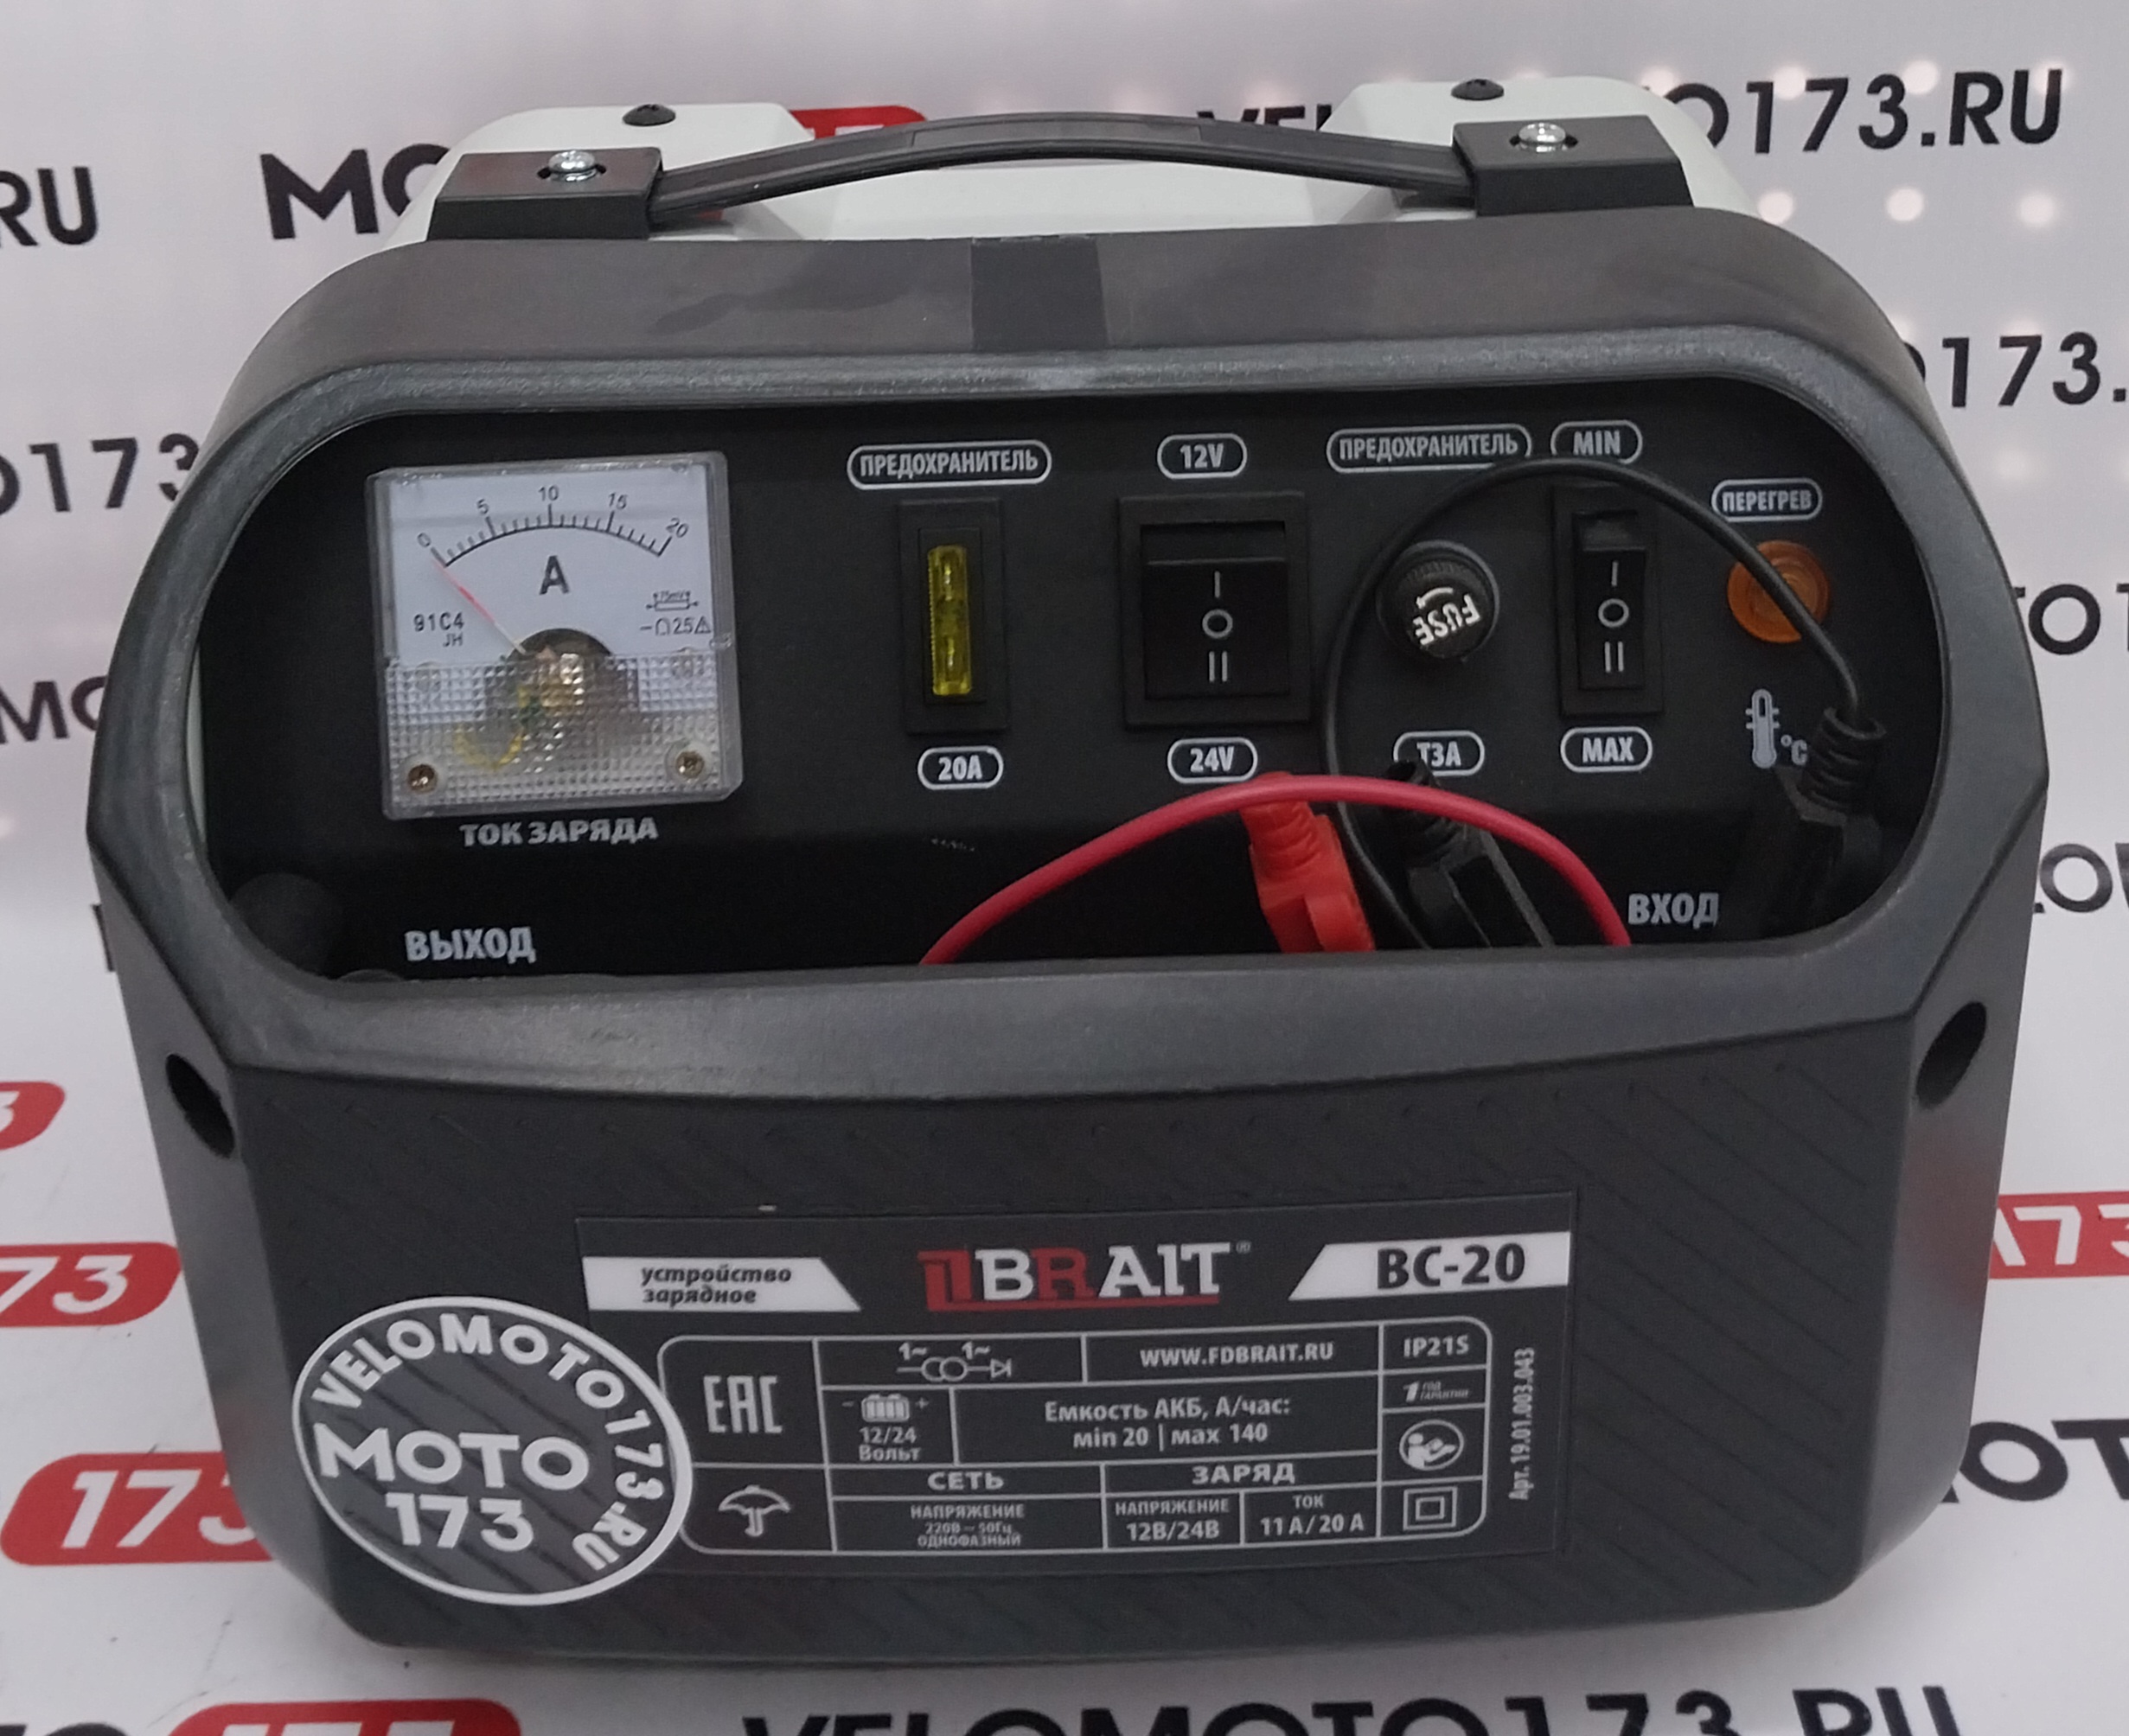 Устройство зарядное BC-20 (Напряжение 12/24В, емкость 20-140А/ч, сеть 220В-50Гц, ток 11А/20А